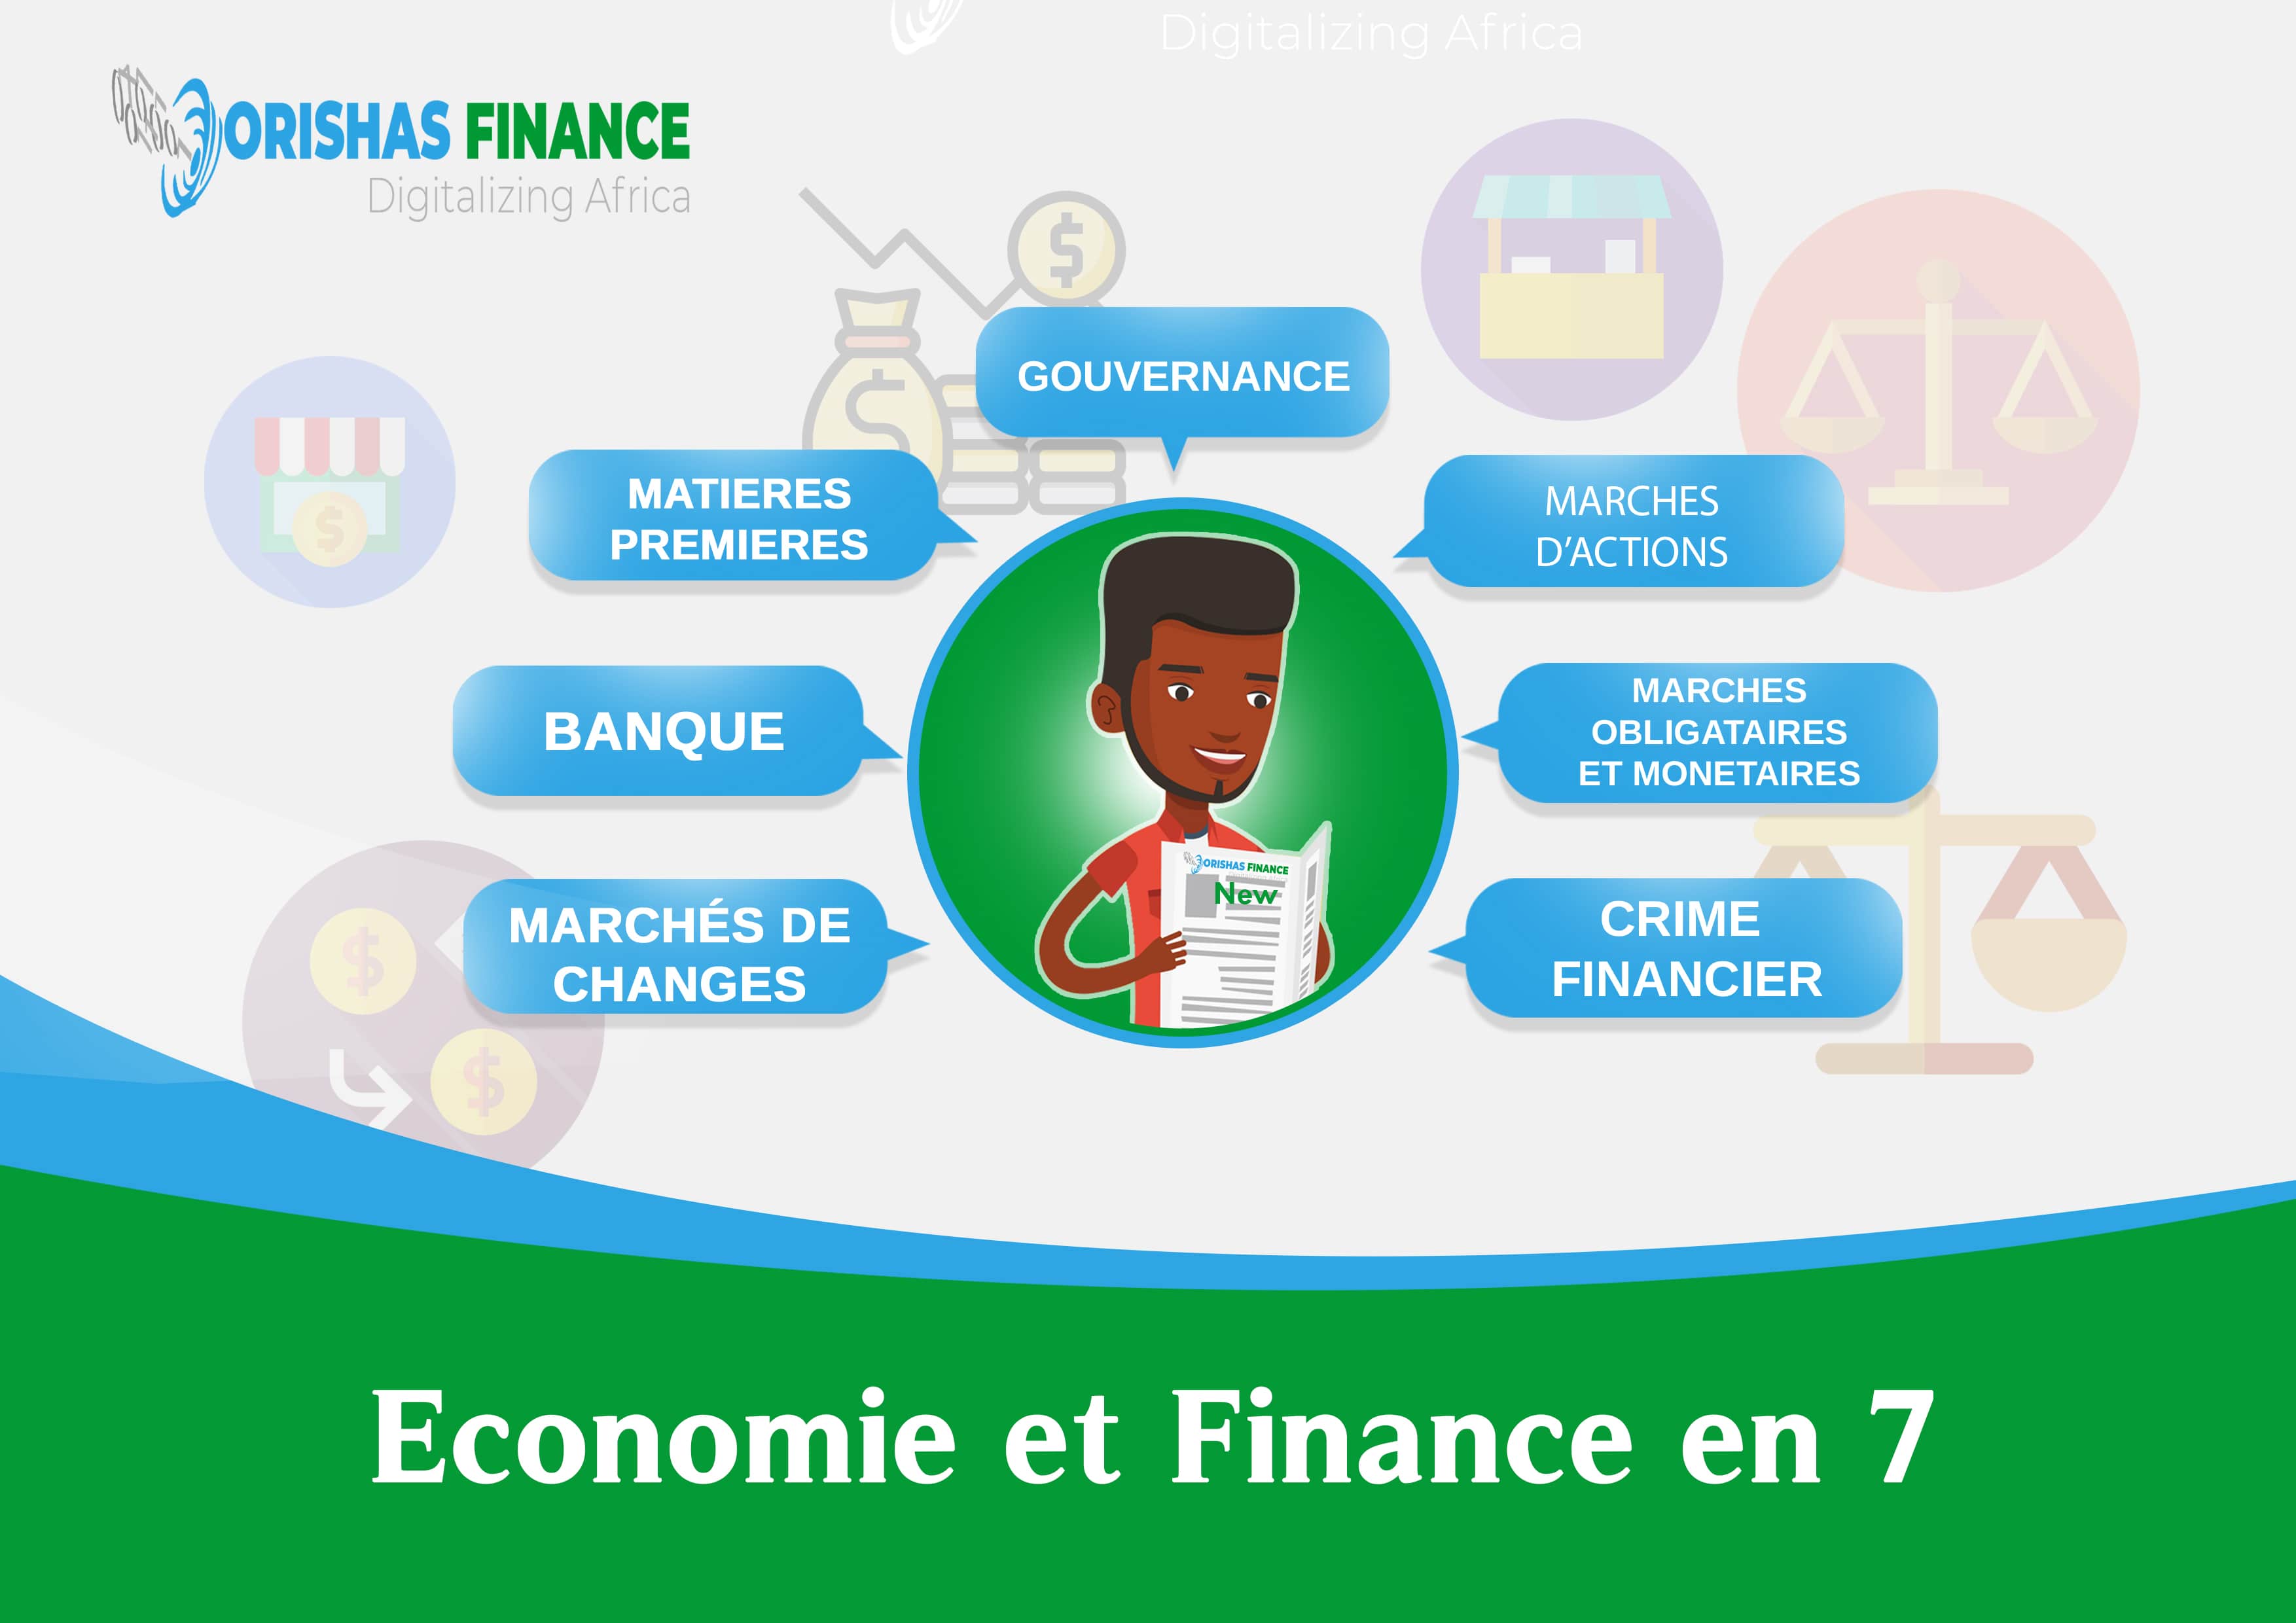  Economie et Finance en 7 du 24 au 28 Mai 2021 